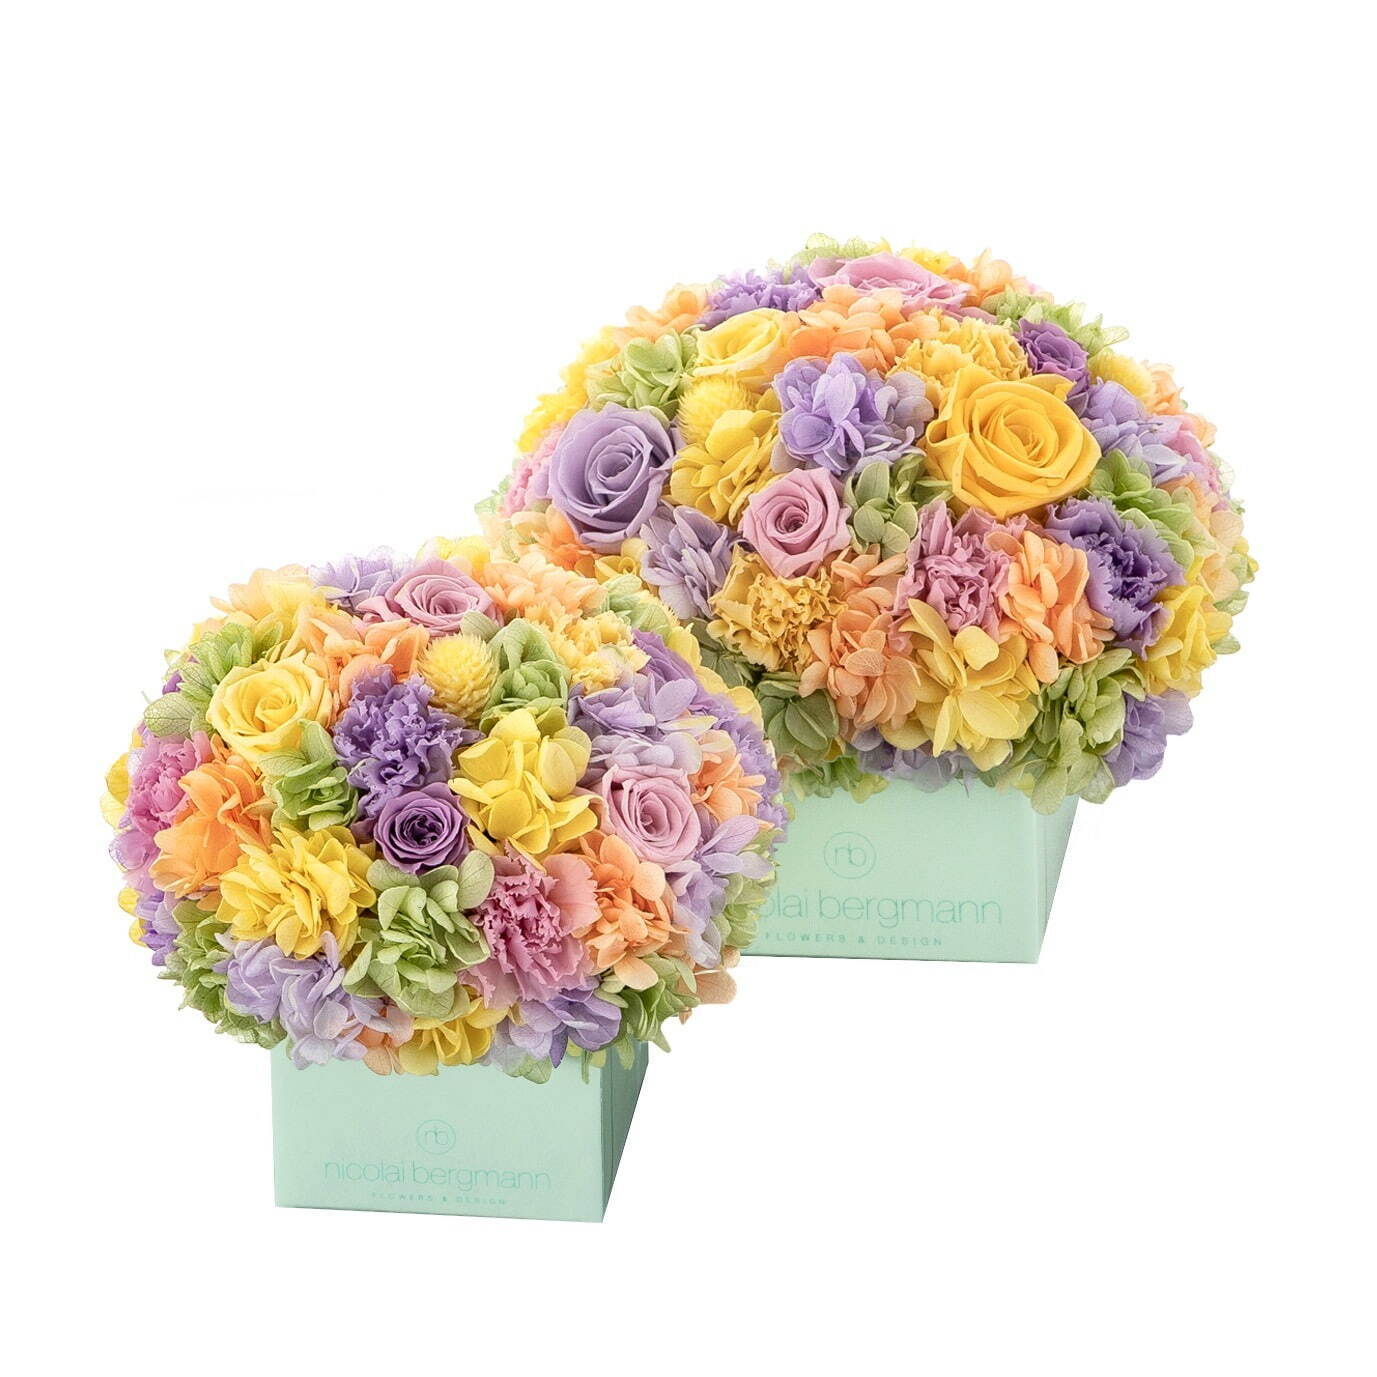 ニコライ バーグマンの夏限定フラワーボックス コーラルグリーンのボックスにパステルカラーの花々 ファッションプレス